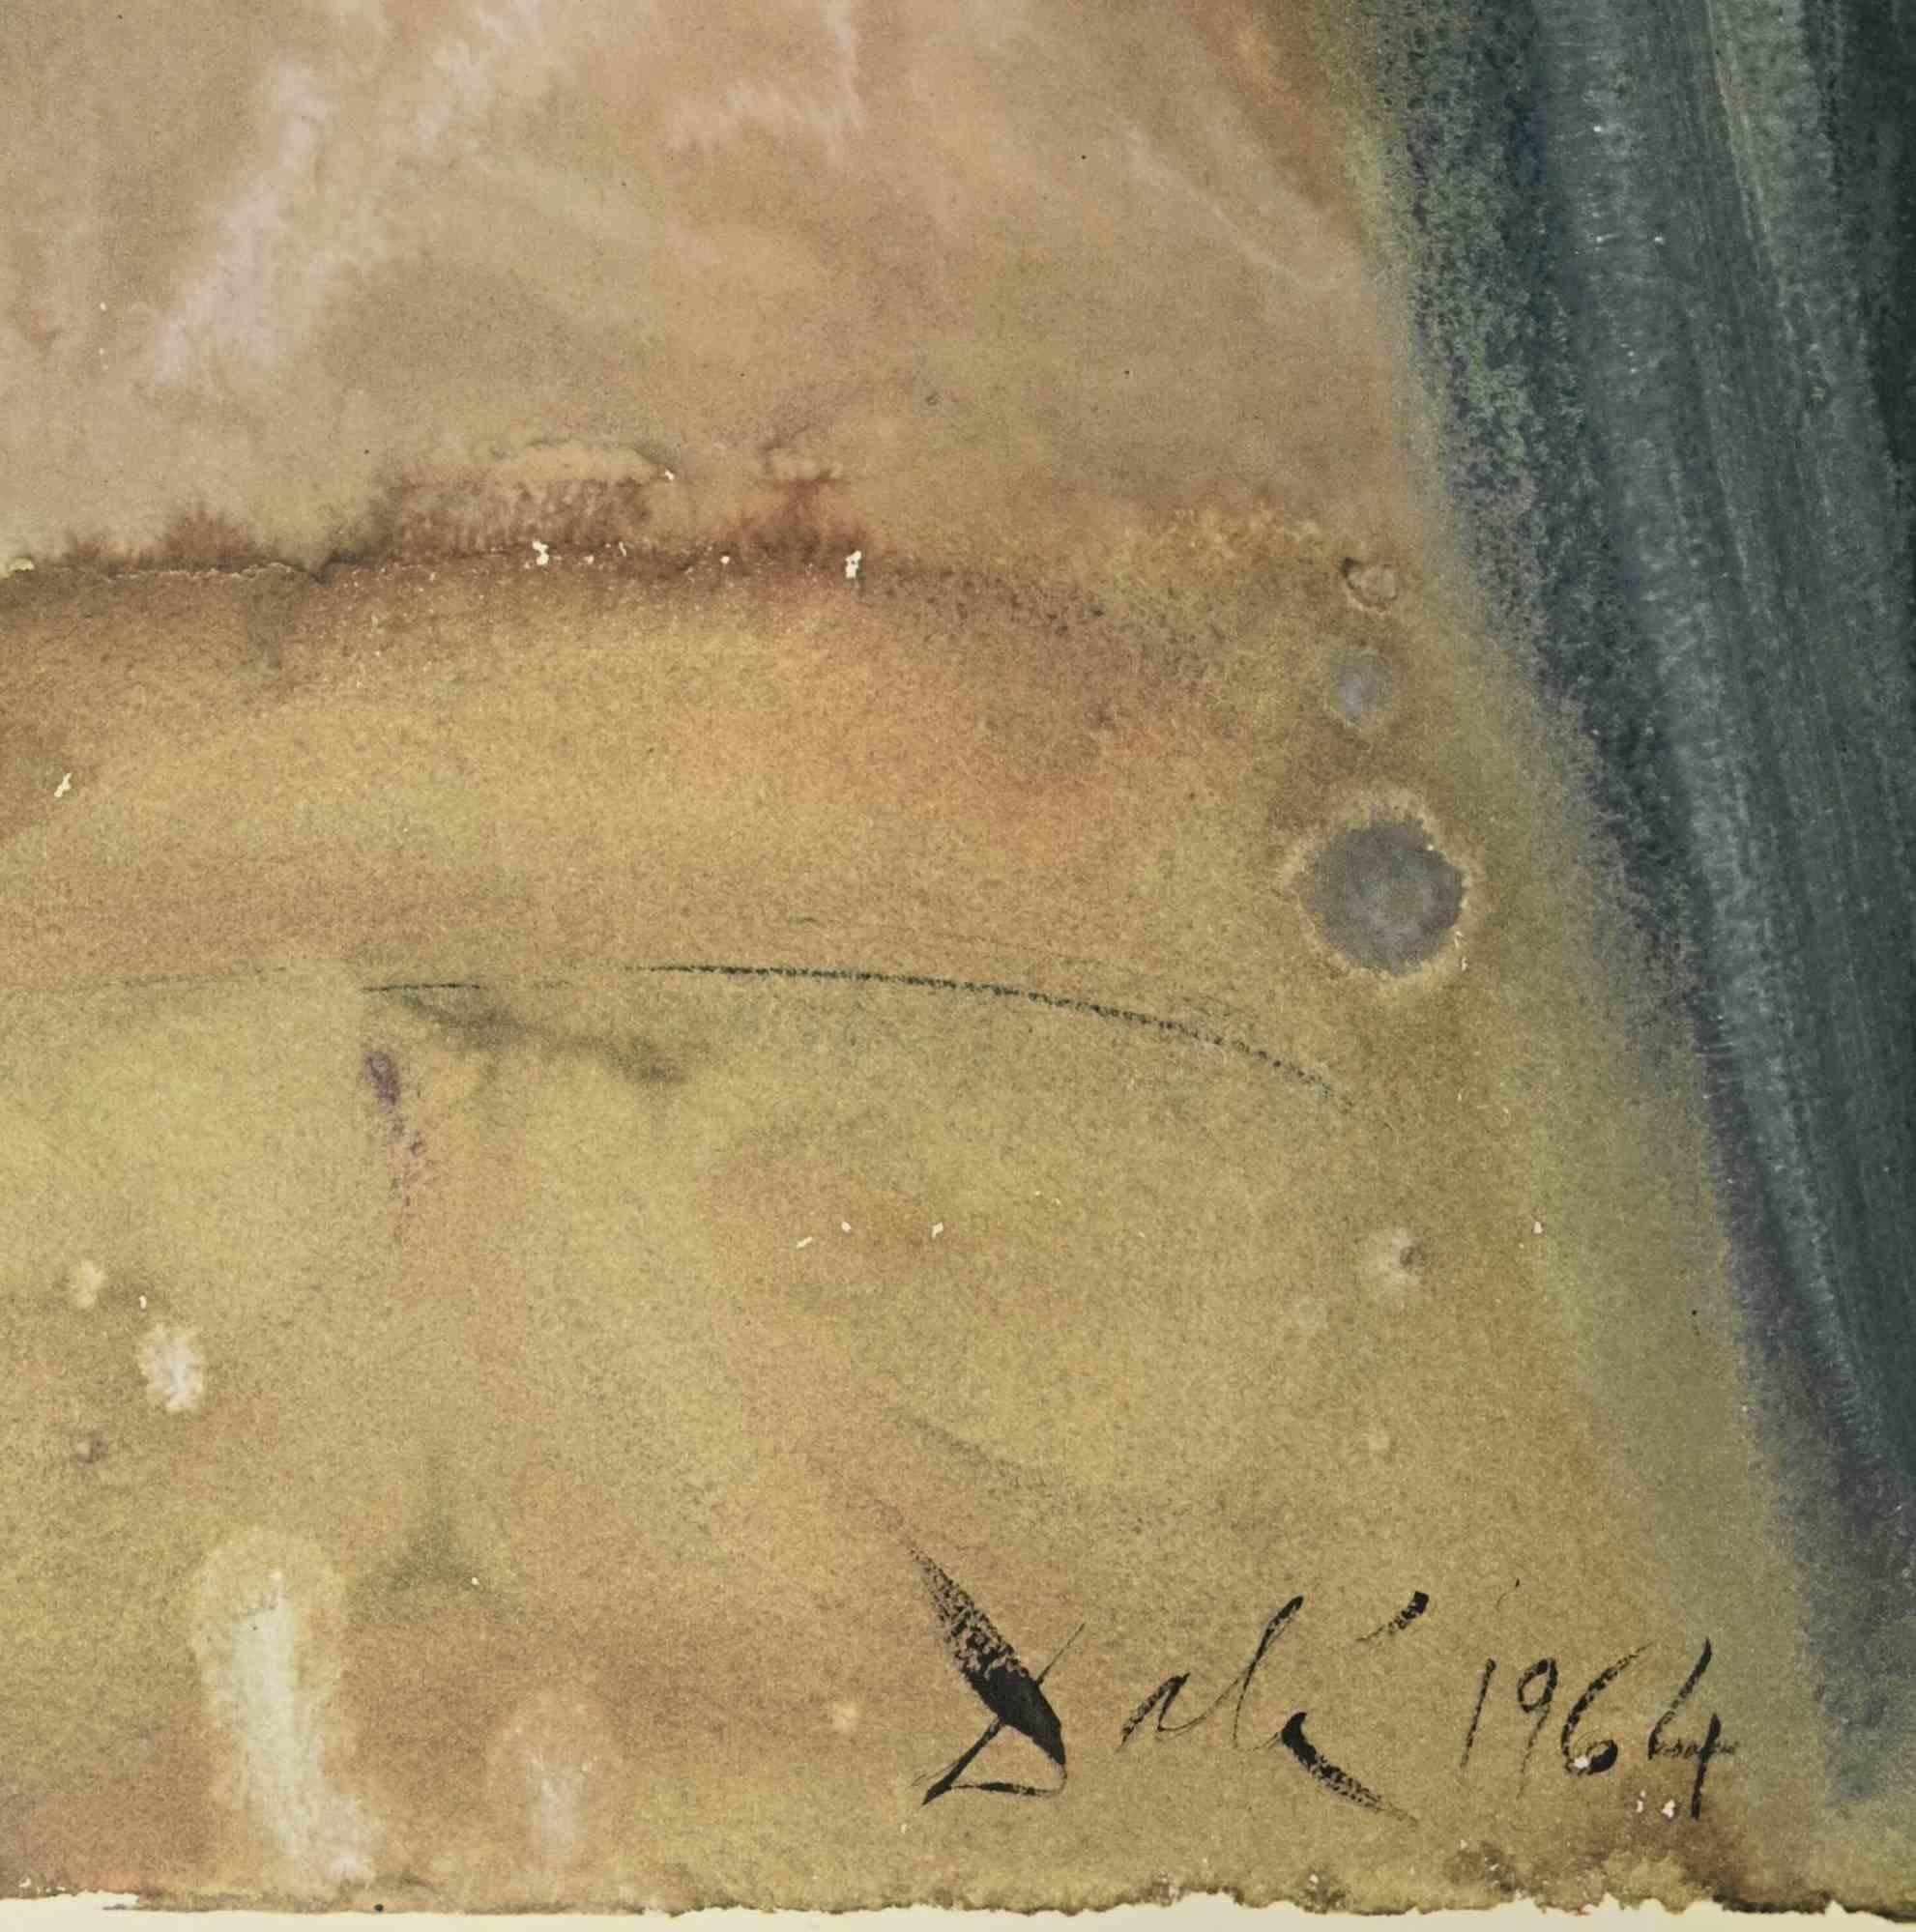 Jardinière, Virgo, Accinta Sacco - Lithographie - 1964 - Print de Salvador Dalí